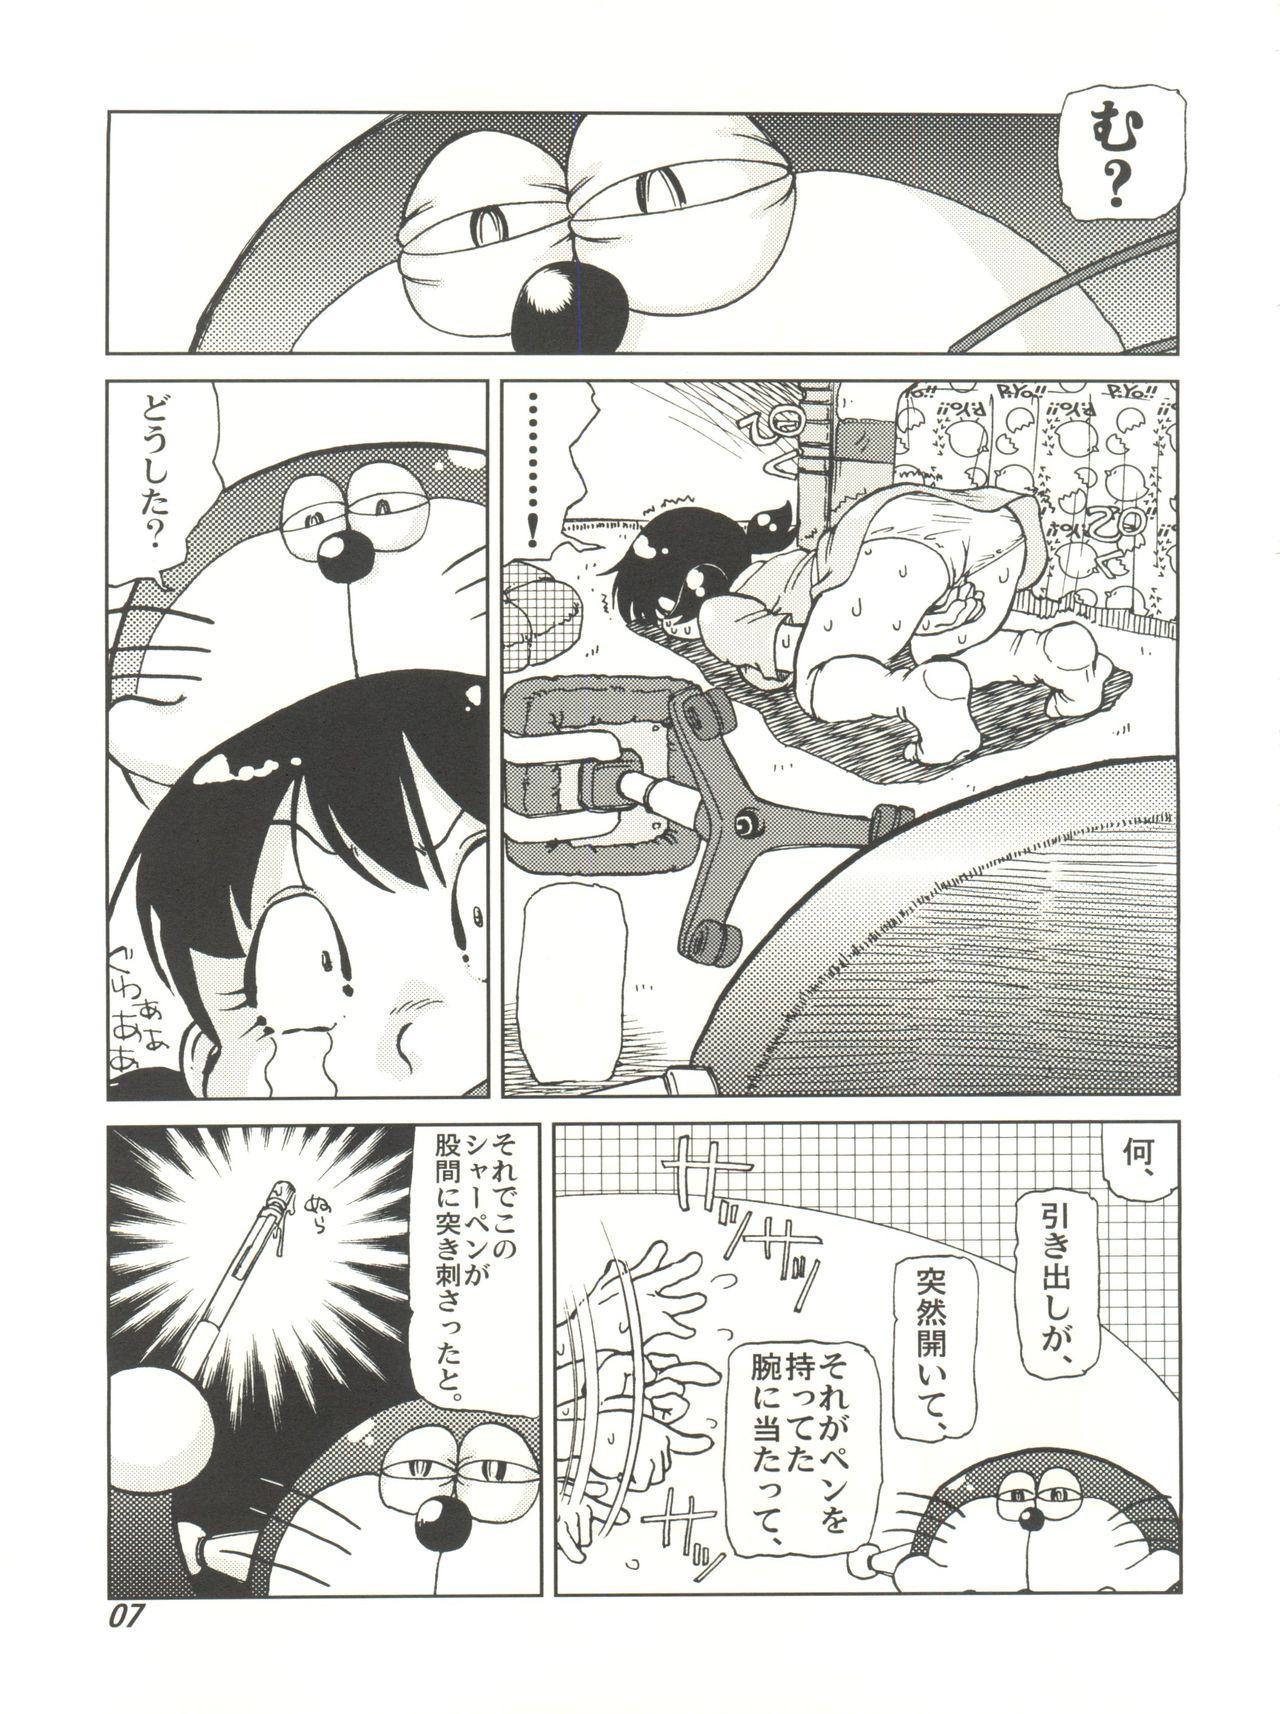 Sucking Cocks COUNTER DORA SHIZUKA & KAKUGARI GUARDIAN - Doraemon Omegle - Page 6